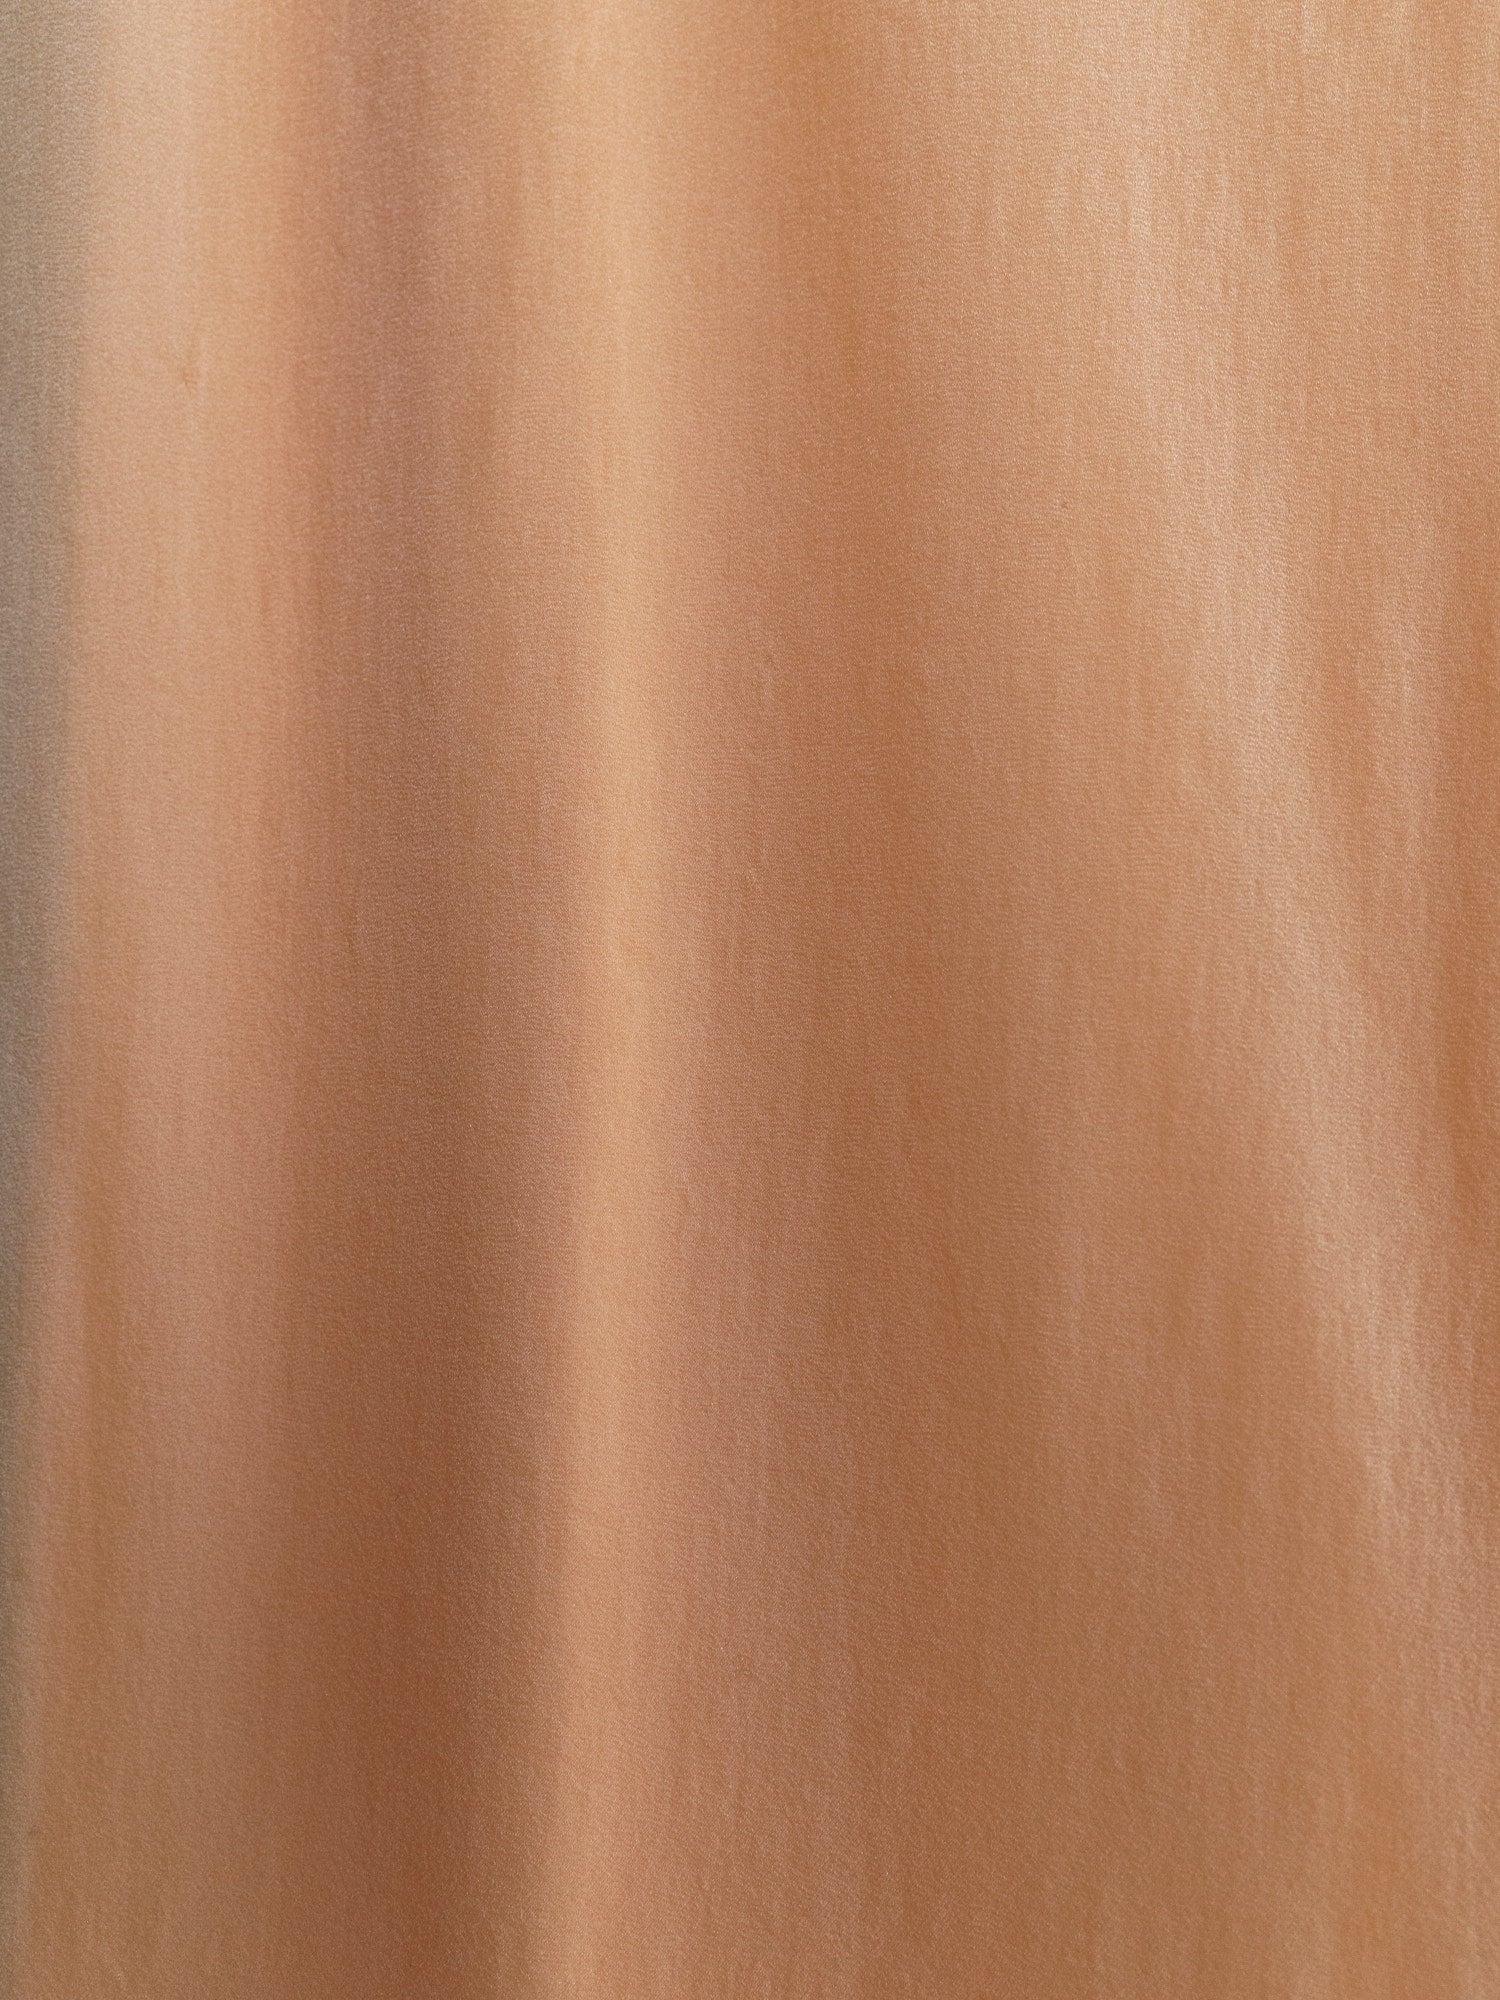 Issey Miyake apricot double layered knit sleeveless dress - S M